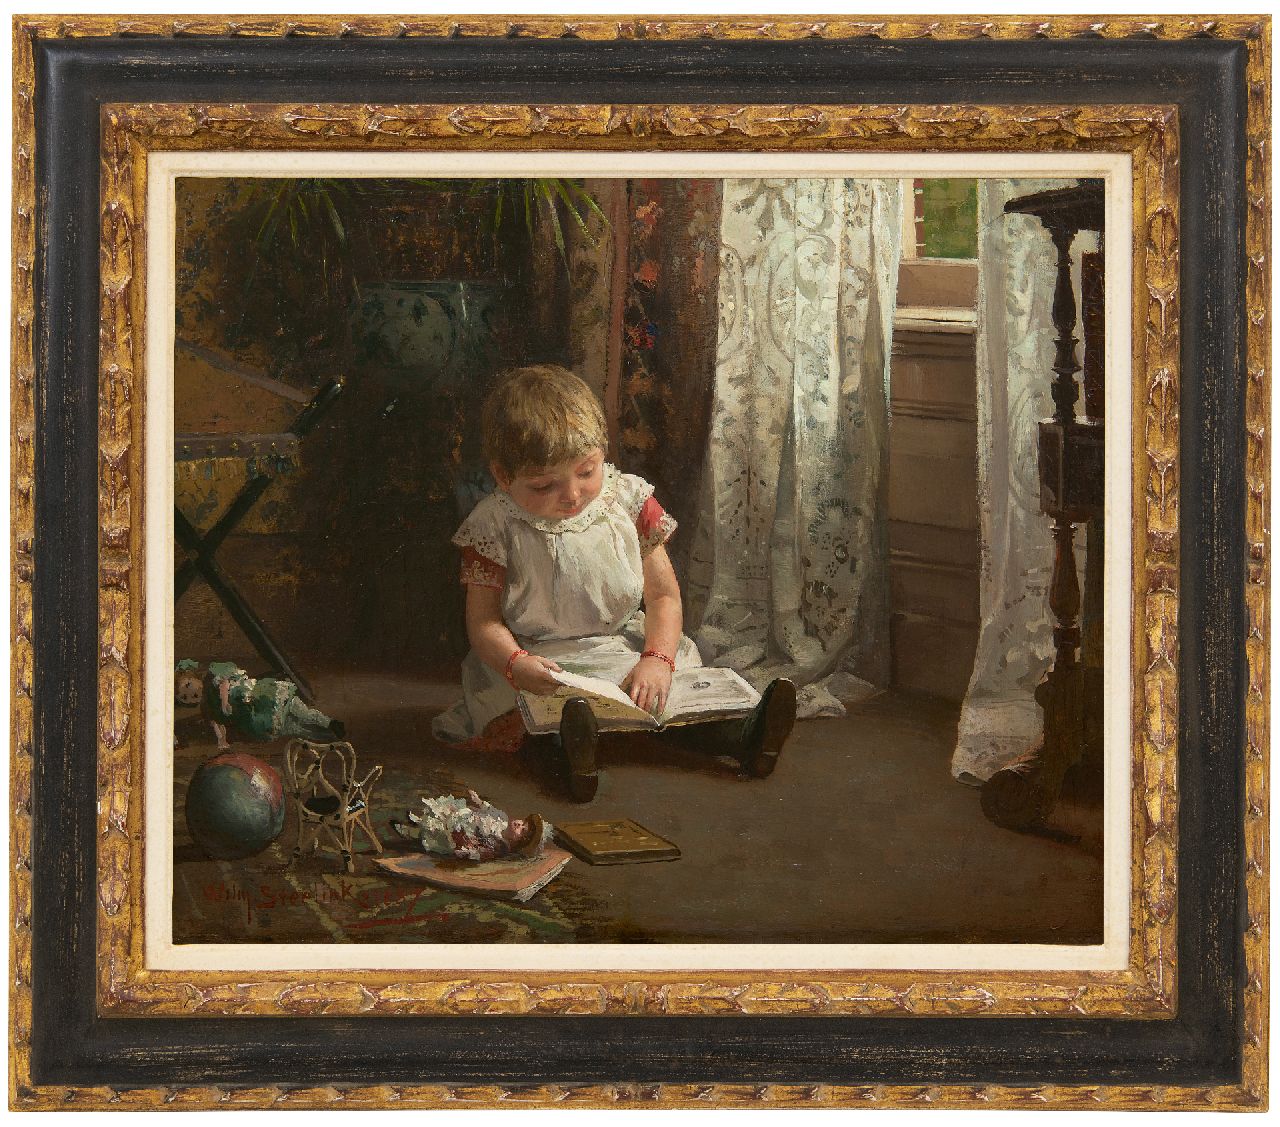 Steelink jr. W.  | Willem Steelink jr. | Schilderijen te koop aangeboden | Boekje lezen, olieverf op doek 37,8 x 47,3 cm, gesigneerd linksonder en gedateerd 1887